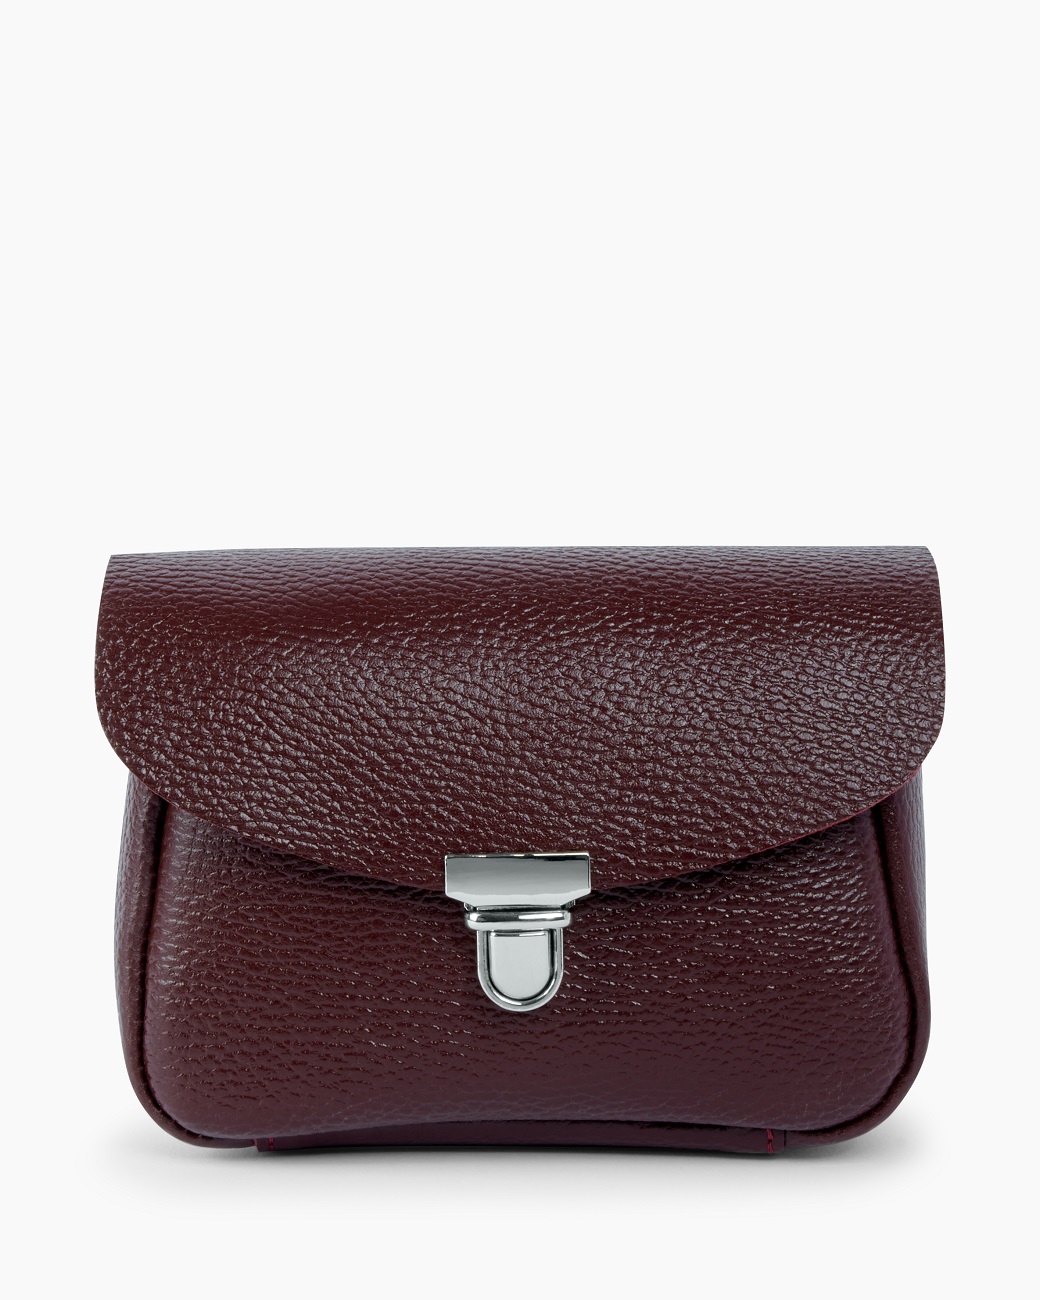 Женская поясная сумка из натуральной кожи бордовая A001 burgundy mini grain